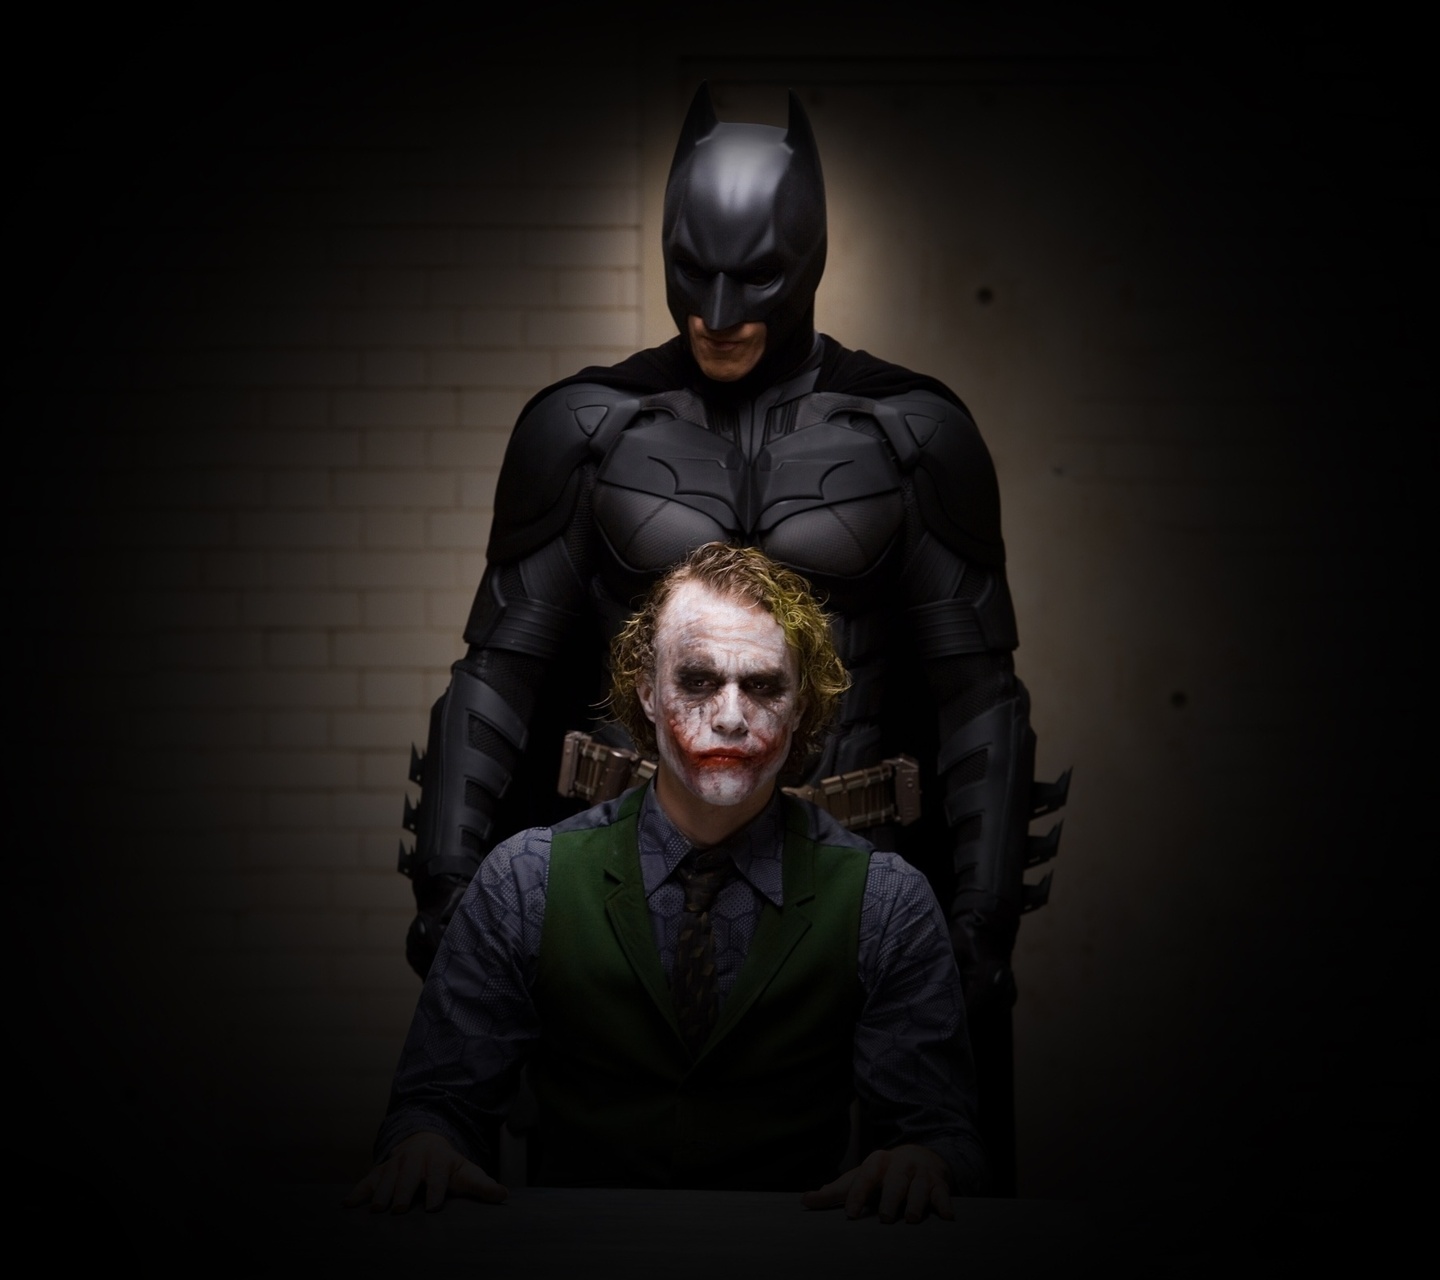  download Joker Vs Batman Wallpaper HD Wallpapers on 1440x1280